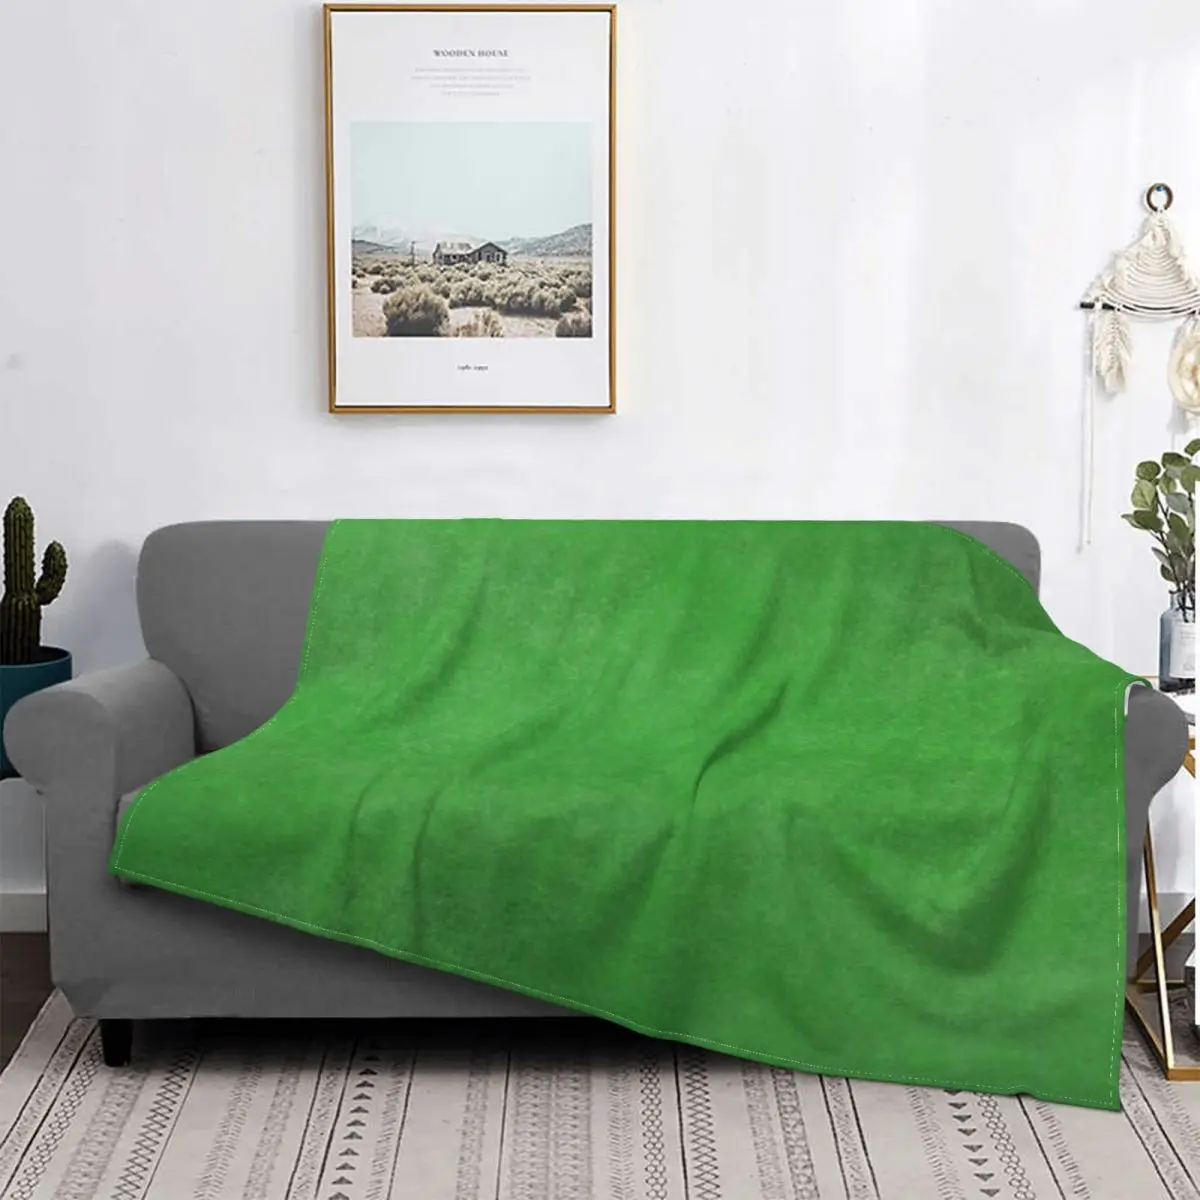 

Colcha de color verde para cama, cubierta de cama a cuadros, cubierta de playa, manta de verano, colcha de verano